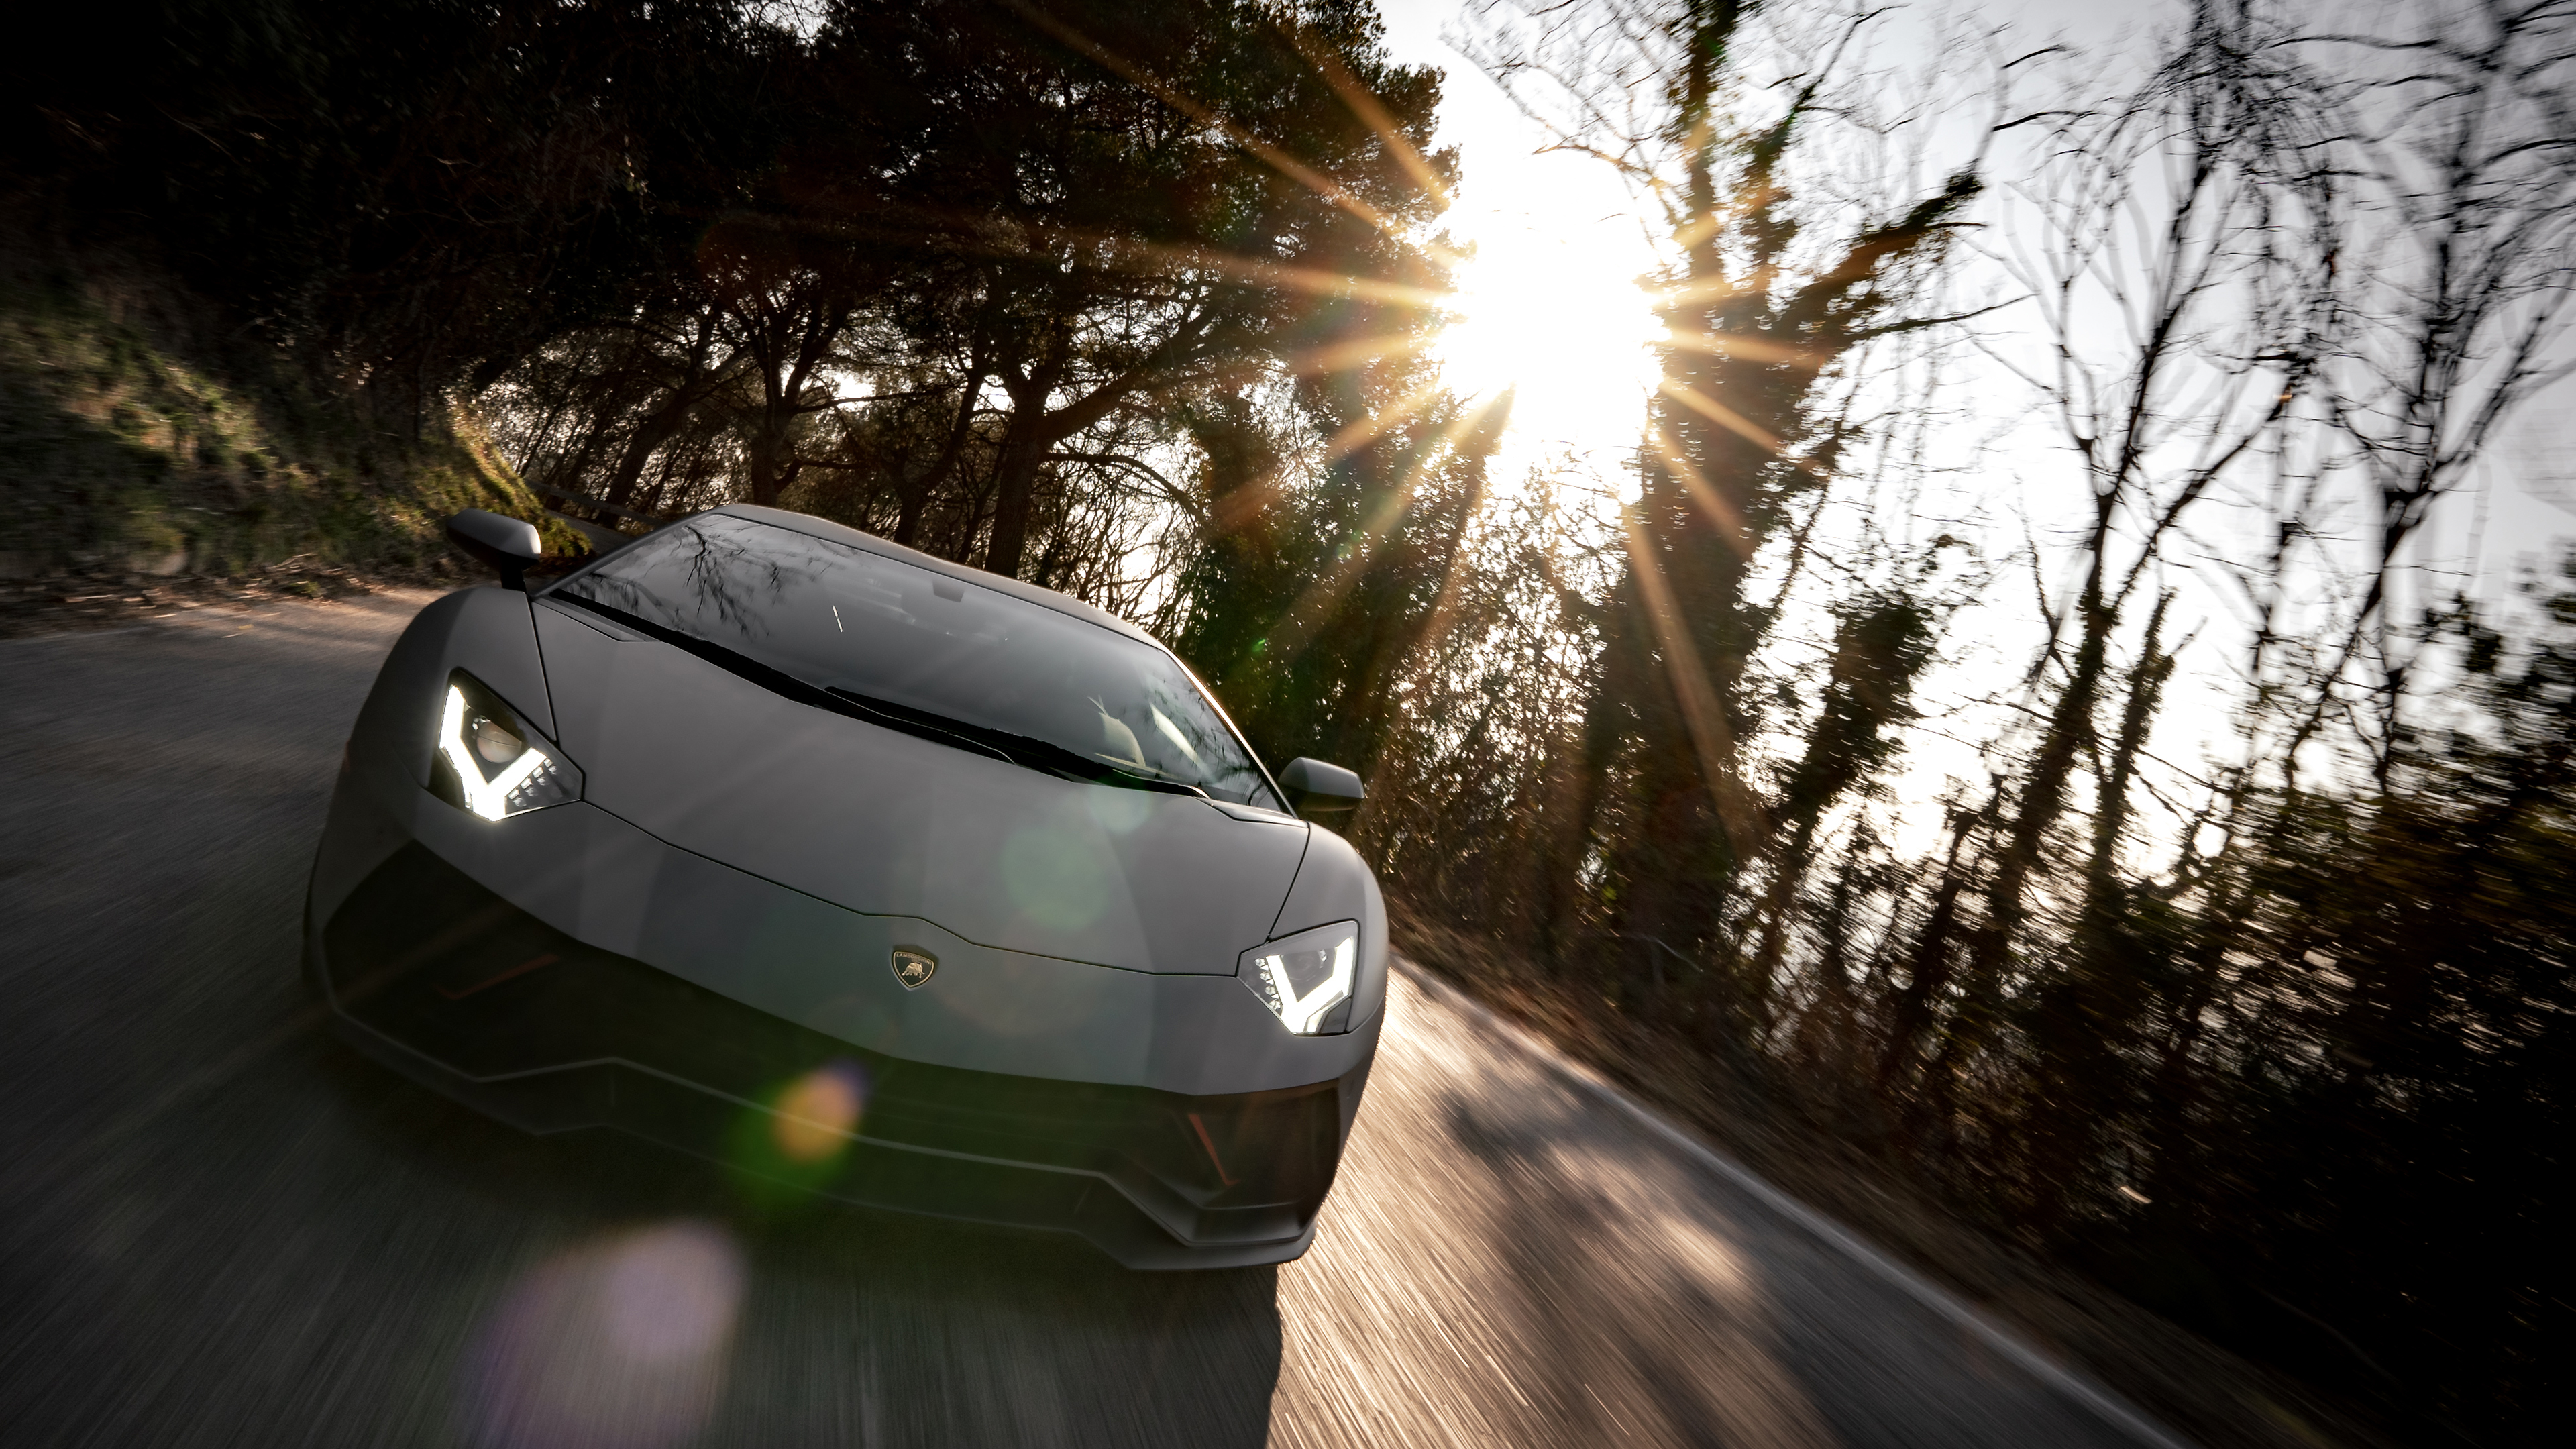 Lamborghini Aventador HD Wallpapers High Quality  PixelsTalkNet